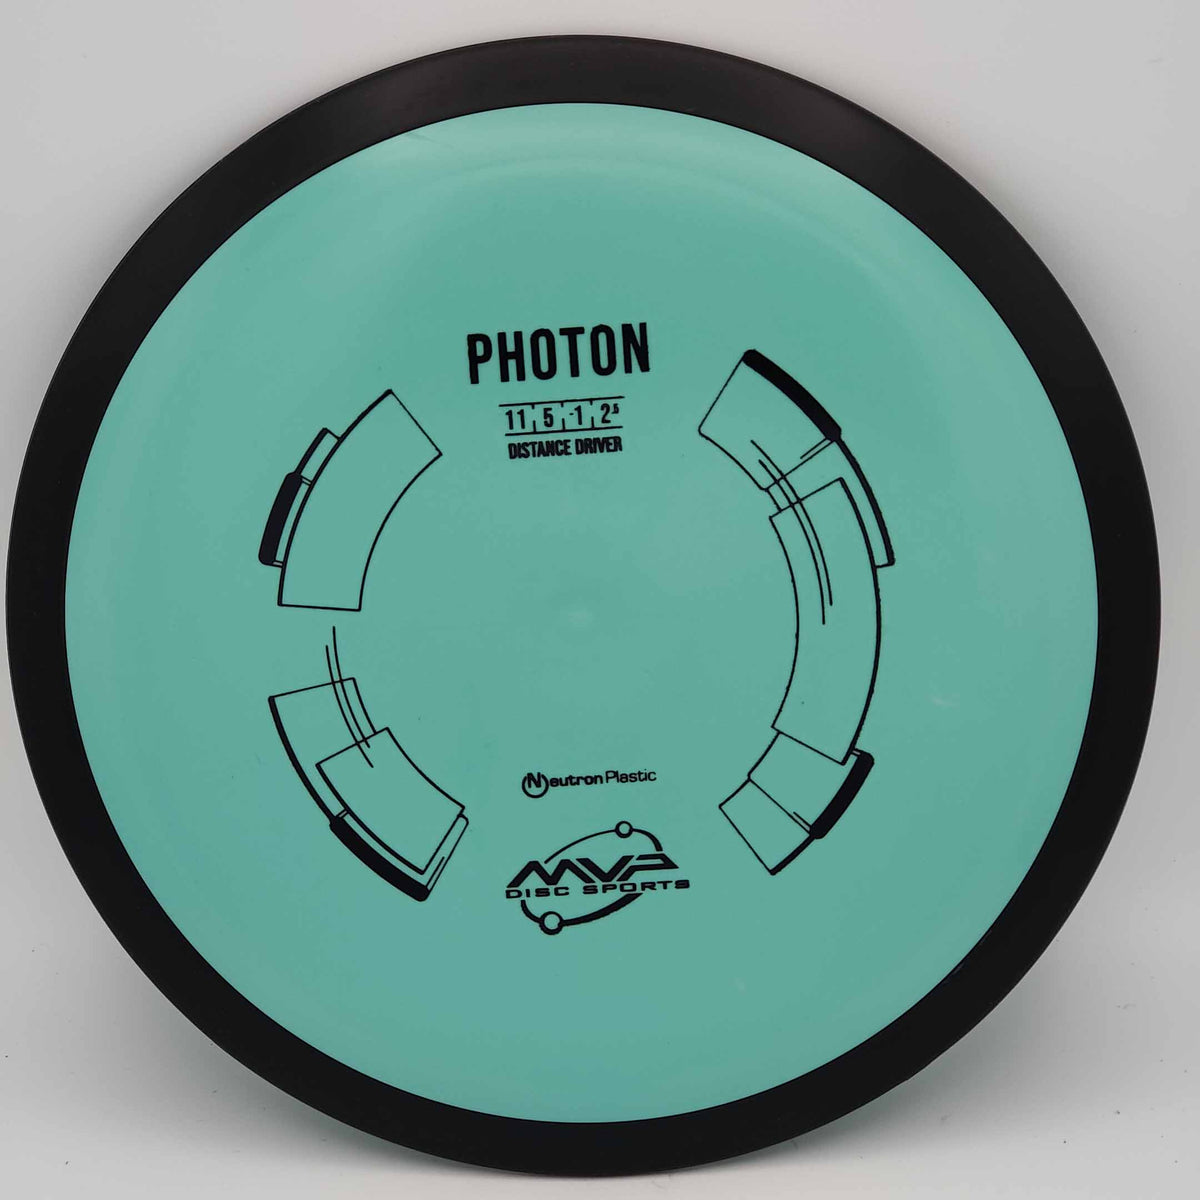 MVP Photon - Neutron 170-175g